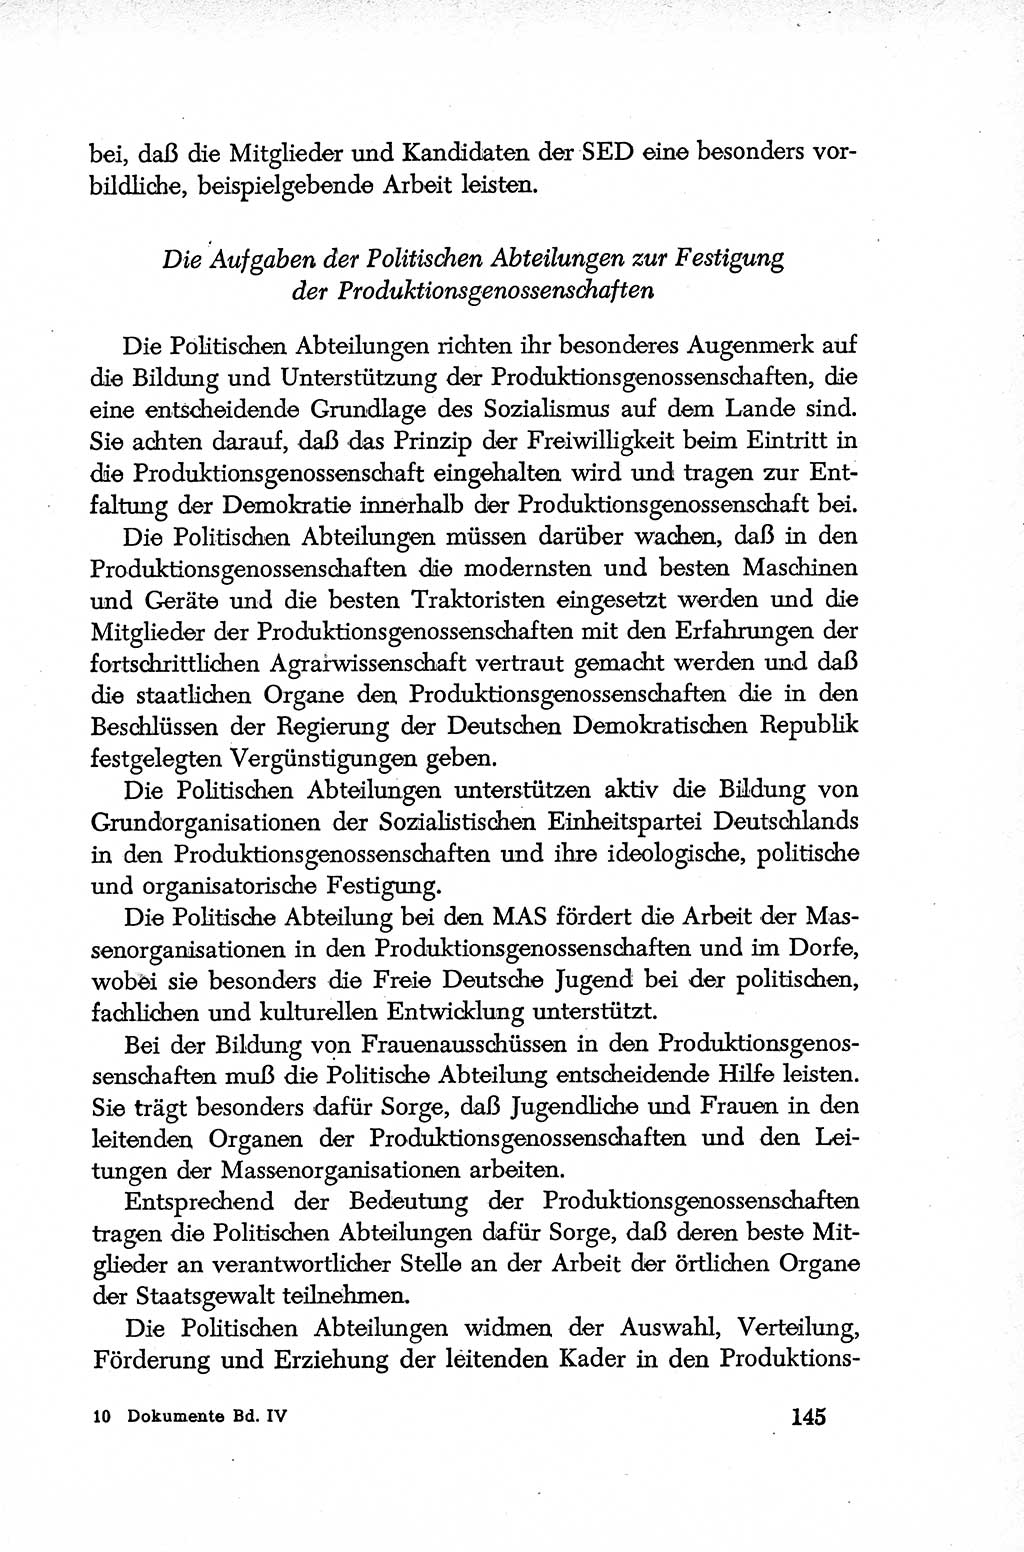 Dokumente der Sozialistischen Einheitspartei Deutschlands (SED) [Deutsche Demokratische Republik (DDR)] 1952-1953, Seite 145 (Dok. SED DDR 1952-1953, S. 145)